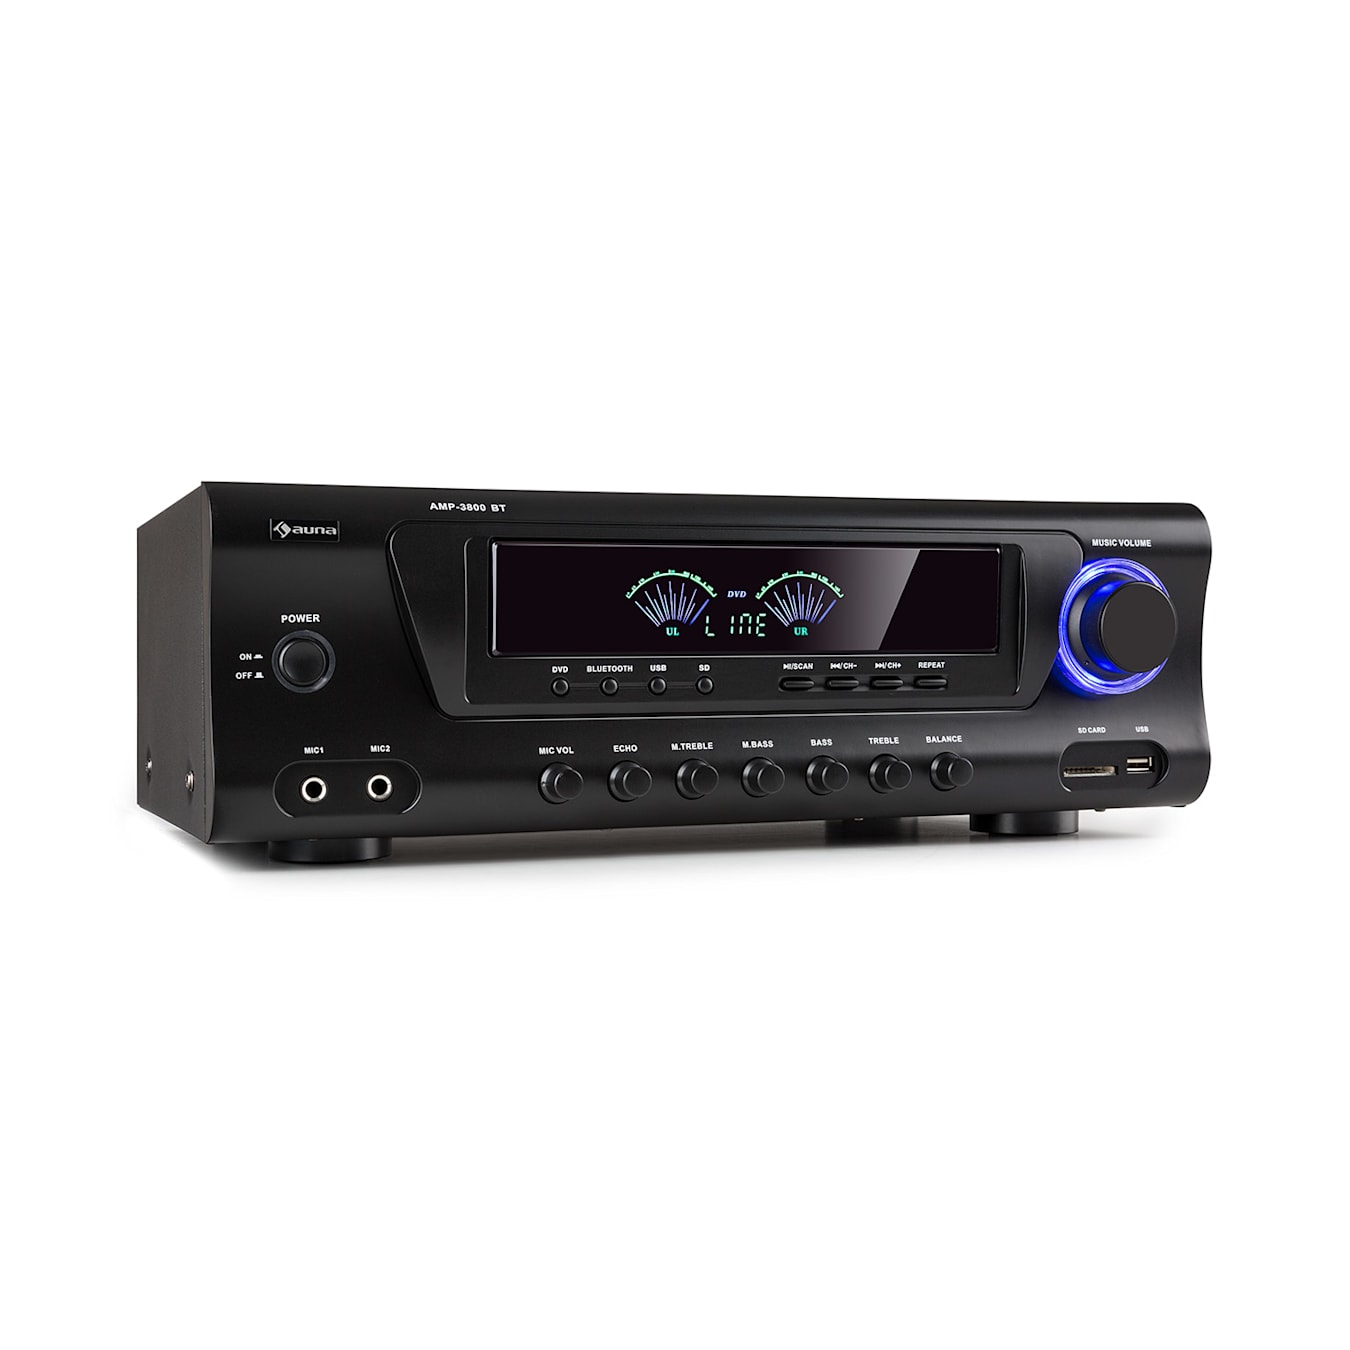 AMP 3800 BT 5.0 Amplificateur HiFi, 2 x 120 watts + 3 x 50 watts RMS, Fonction Bluetooth, Port USB, Emplacement SD, 2 connexions pour  microphone, Entrée stéréo DVD, Sortie lignestéréo